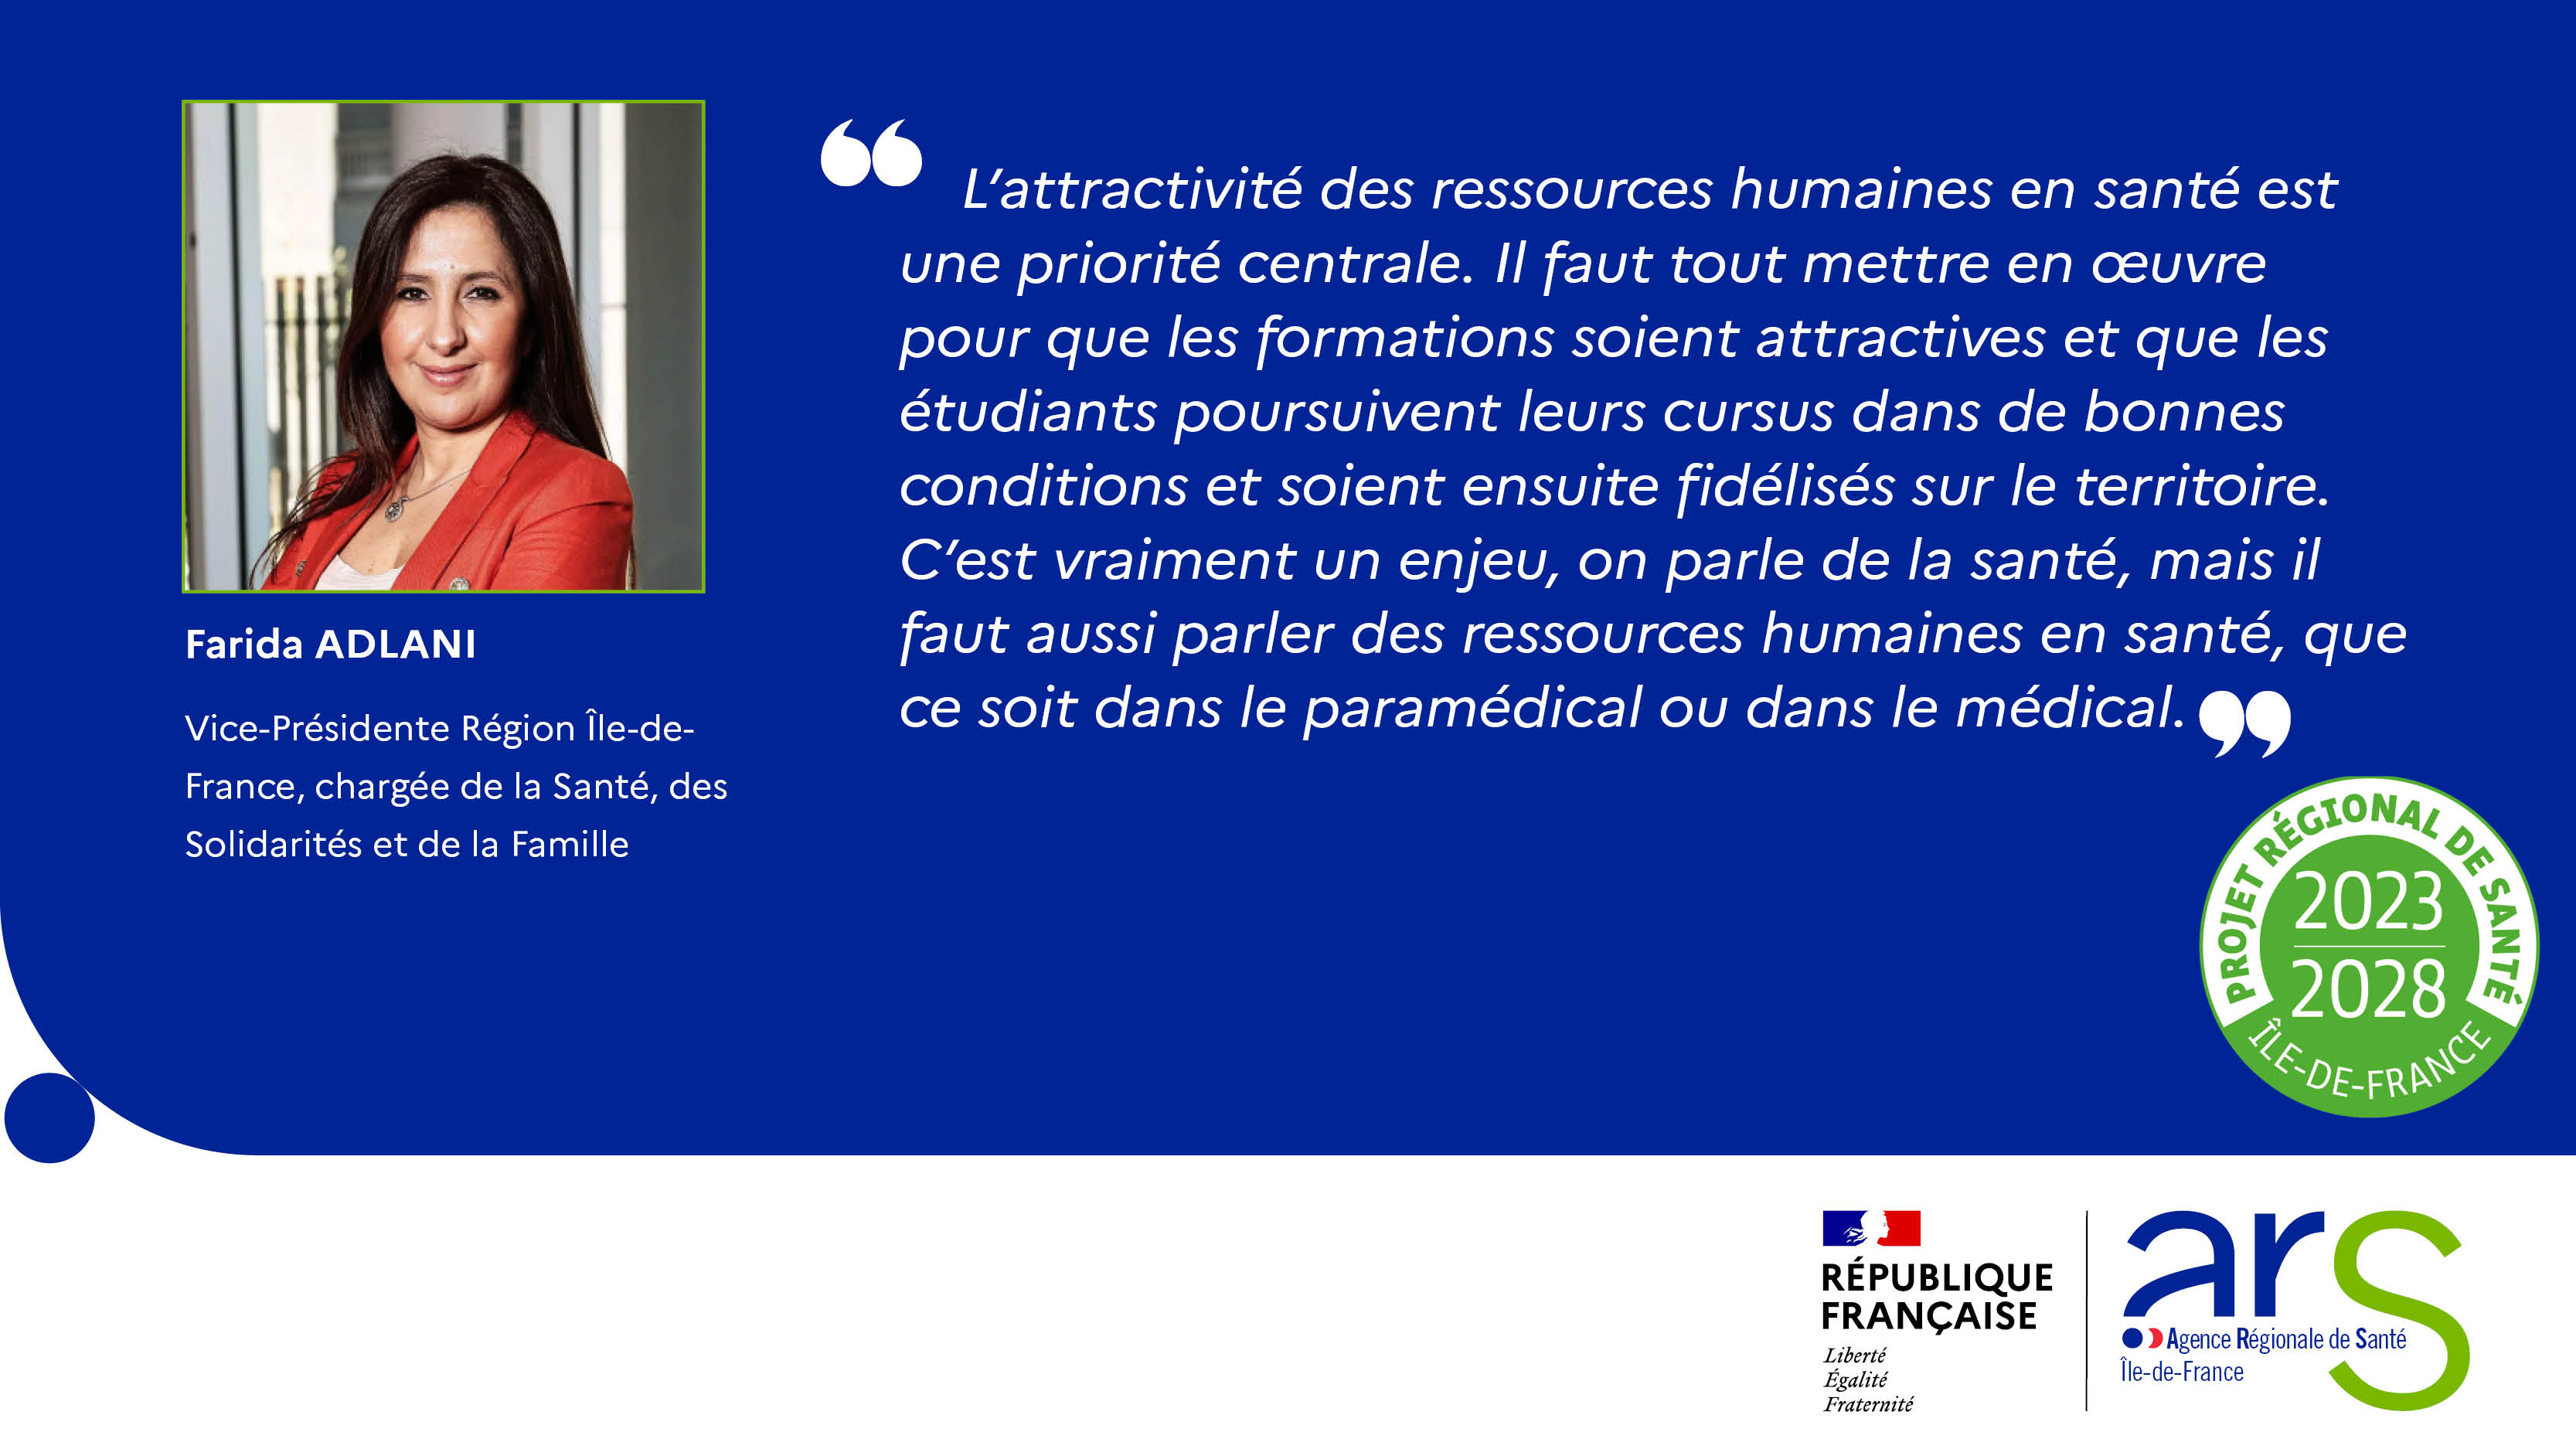 Farida Adlani, Vice-Présidente Région Île-de-France, chargée de la Santé, des Solidarités et de la Famille